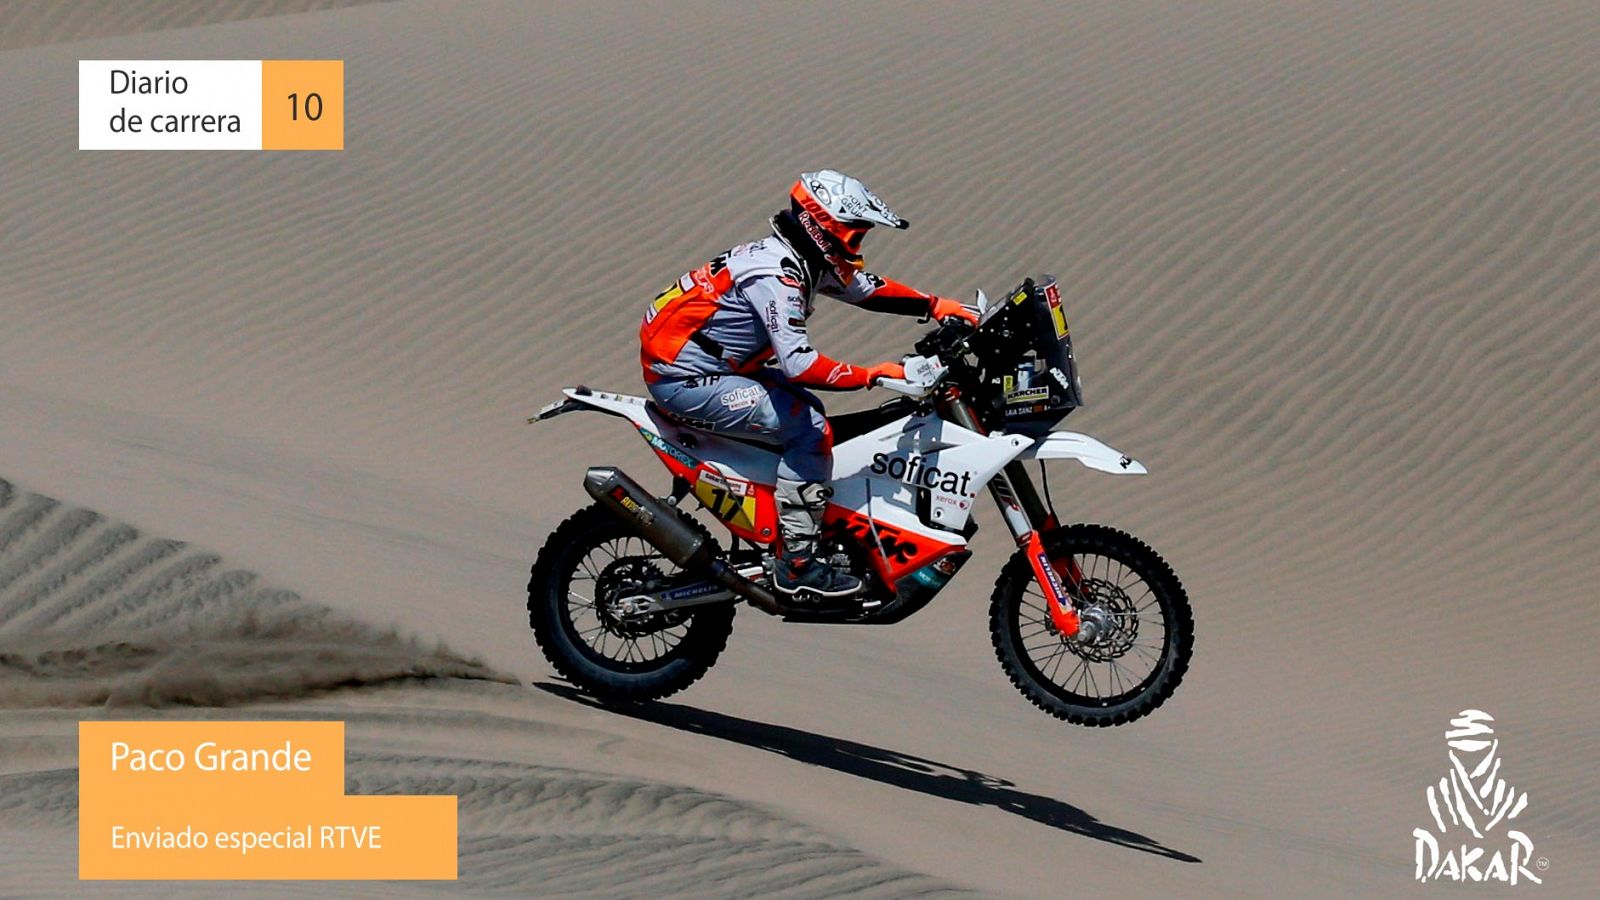 Dakar 2019. Diario de Carrera. Etapa 10 - RTVE.es